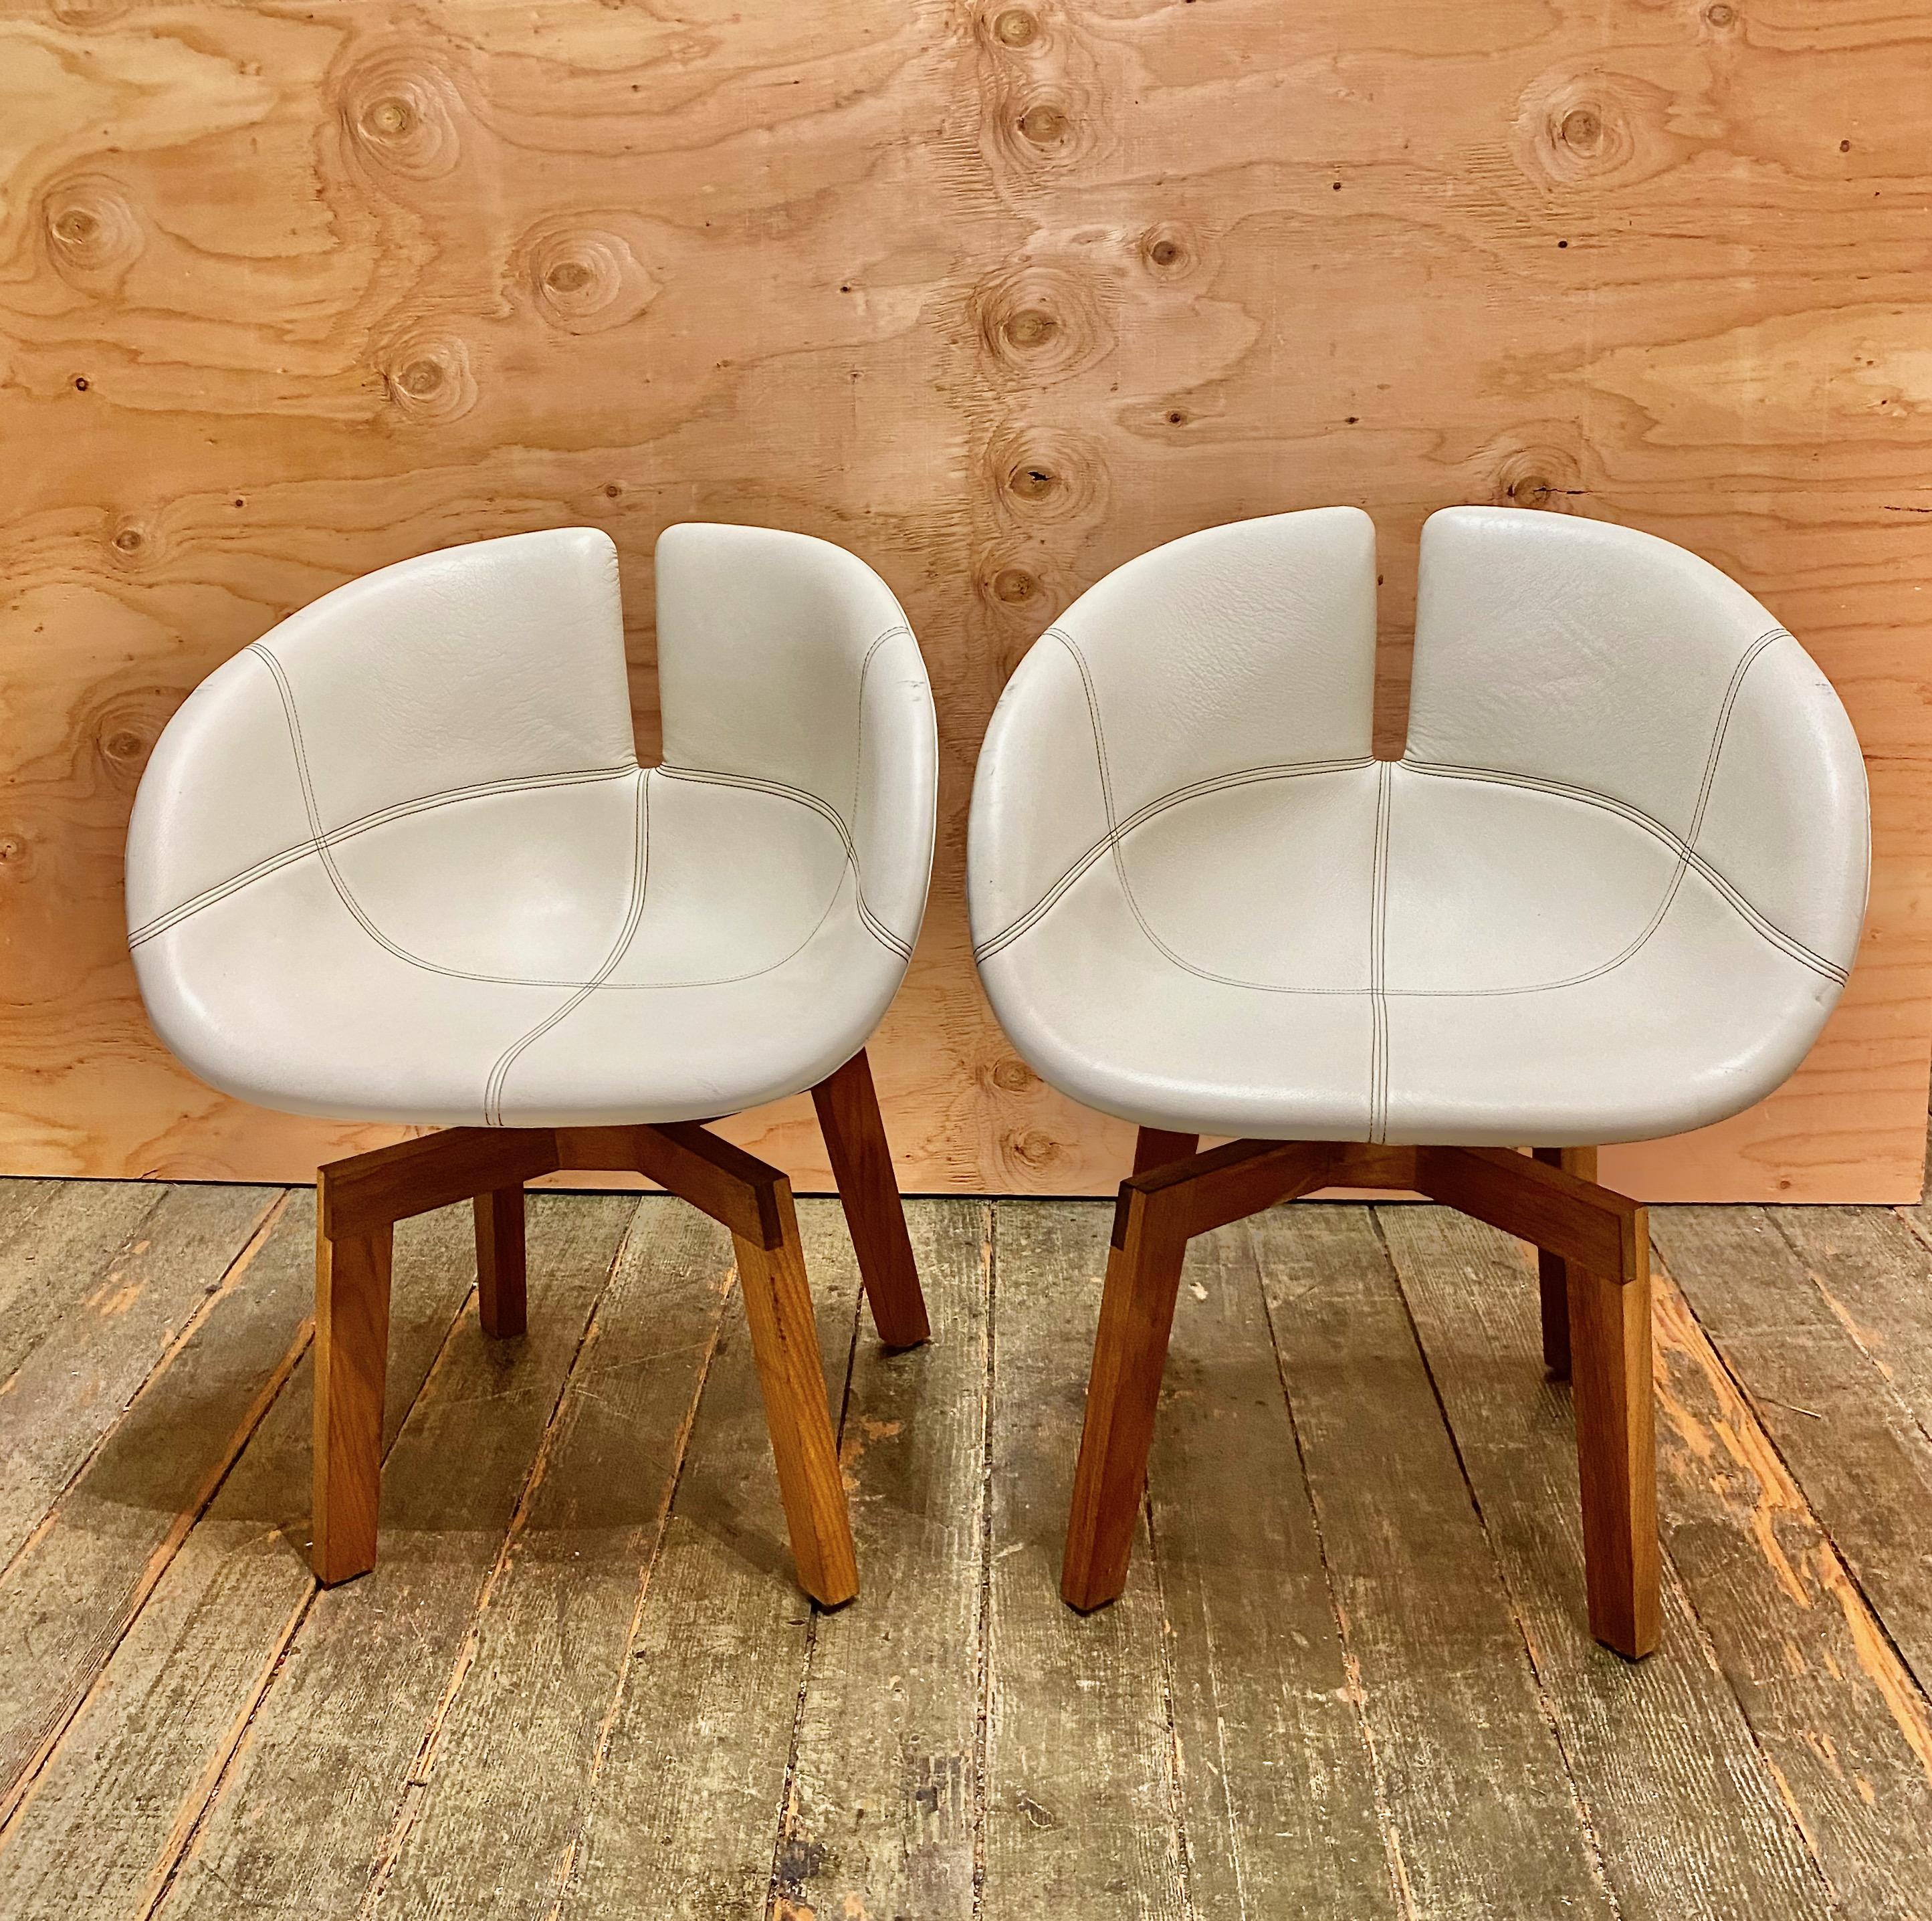 Diese Stühle wurden in Italien von der anerkannten Fabrik Moroso nach den Entwürfen der anerkannten spanischen Designerin Patricia Urquiola hergestellt. Diese besonderen Exemplare gehören zur Spitzenklasse dieses Modells und sind mit hochwertigem,